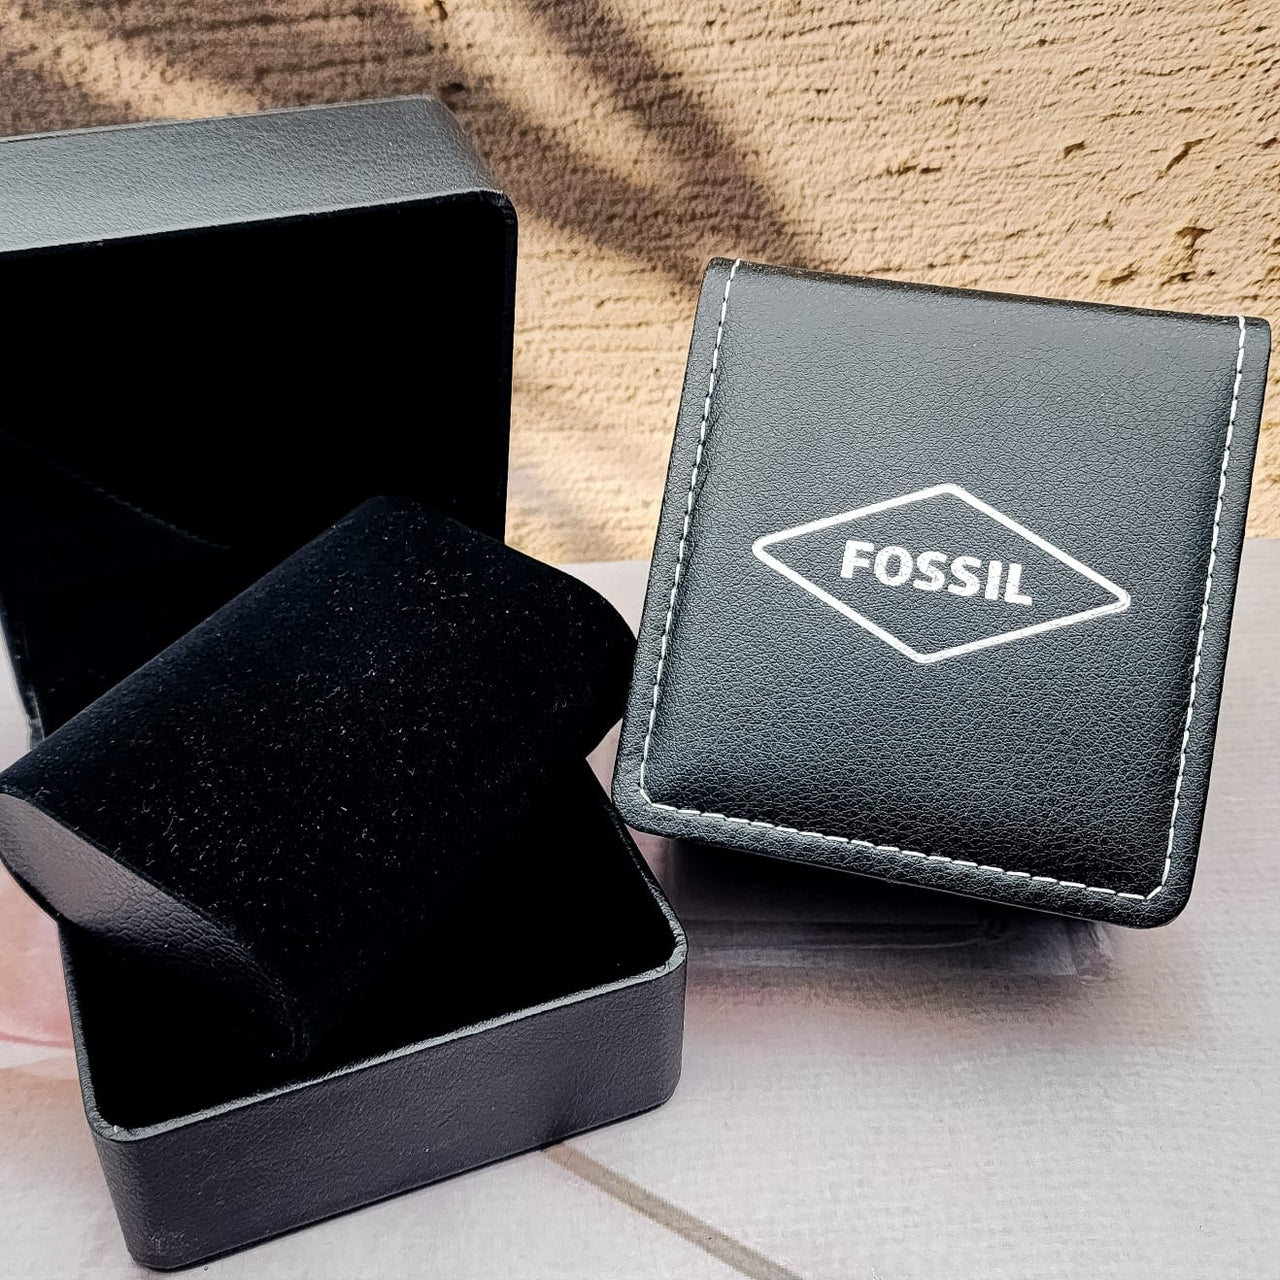 New estuche de lujo para reloj - FOSSIL